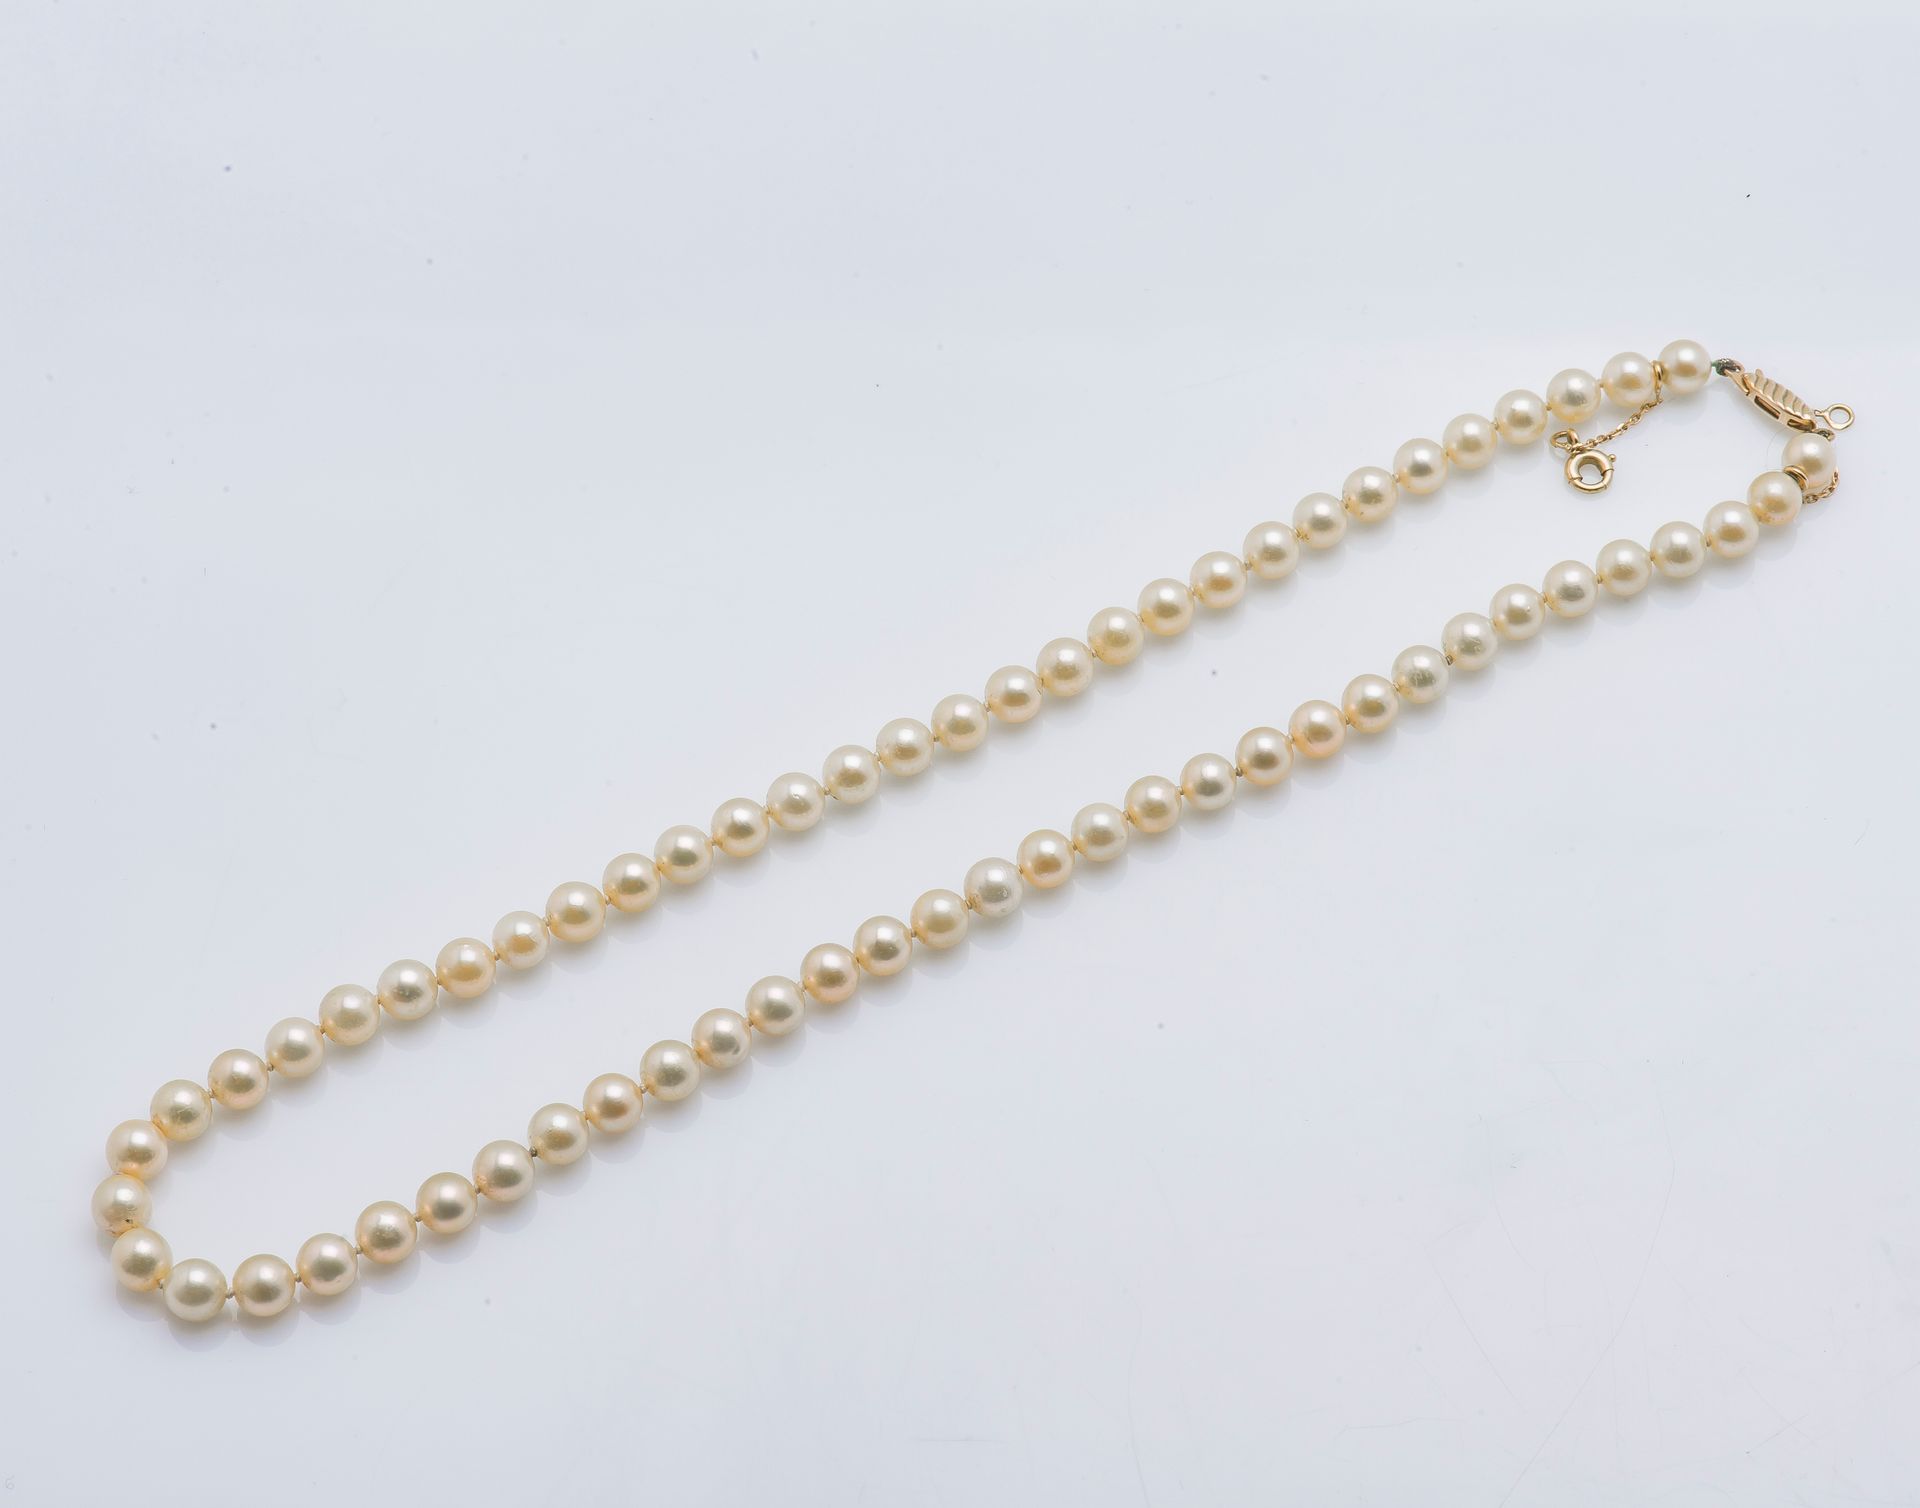 Null 香槟色的一排养殖珍珠项链，18克拉（75万分之一）的黄金橄榄扣，刻有波浪图案。珍珠的直径约为5.7毫米。

长度：40厘米 毛重：18克